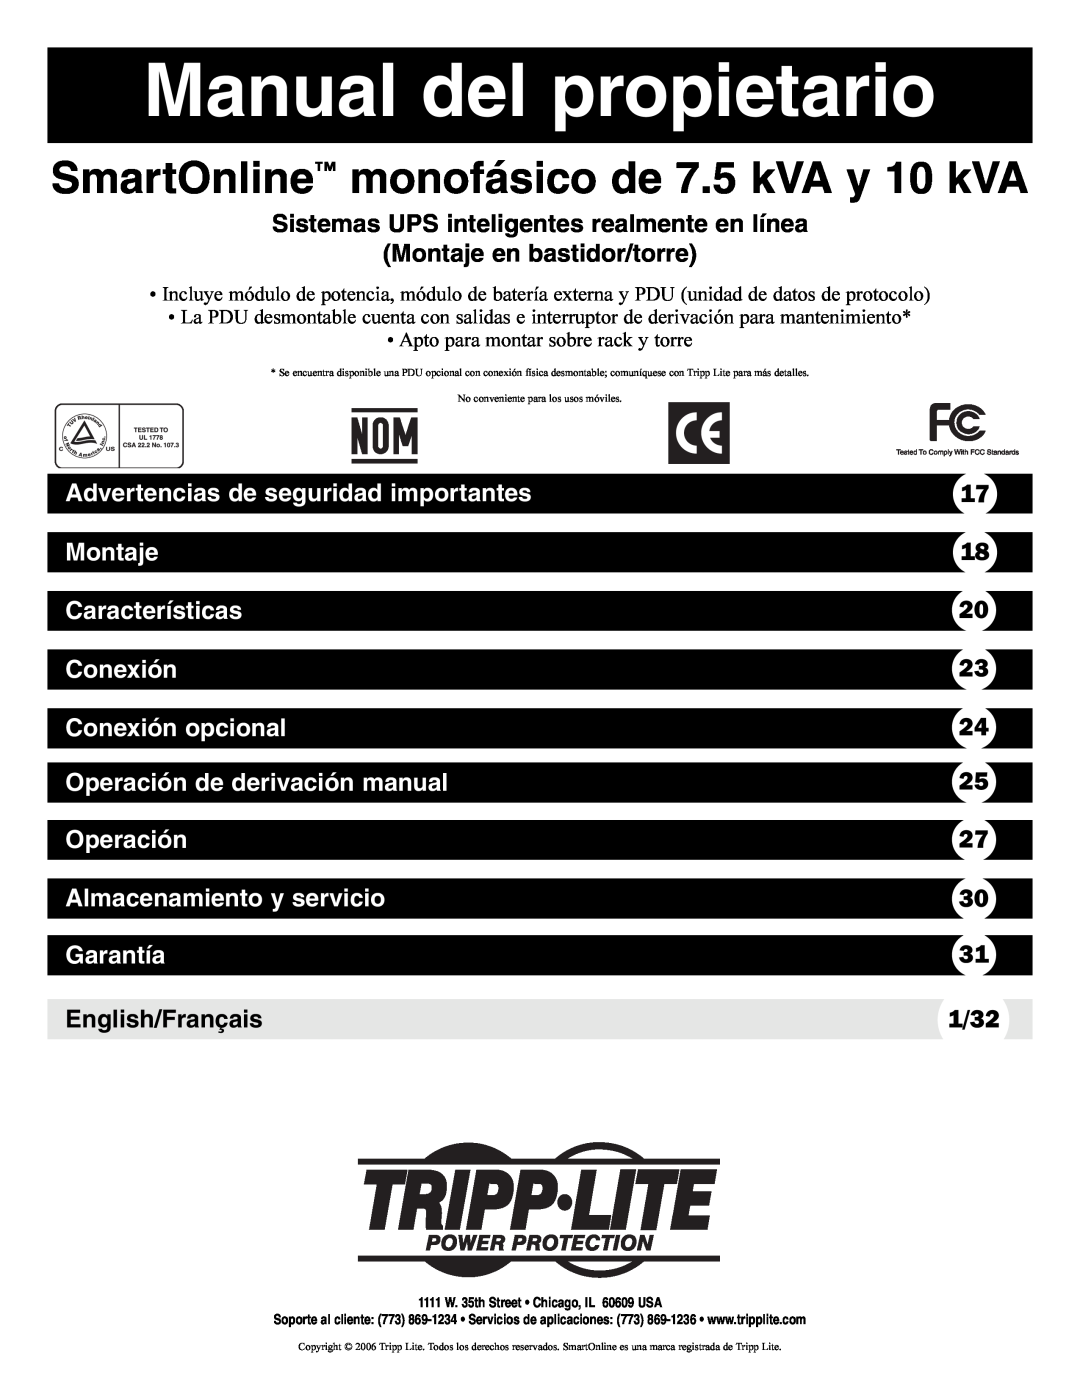 Tripp Lite Single-Phase 7.5kVA Manual del propietario, Sistemas UPS inteligentes realmente en línea, Montaje, Conexión 